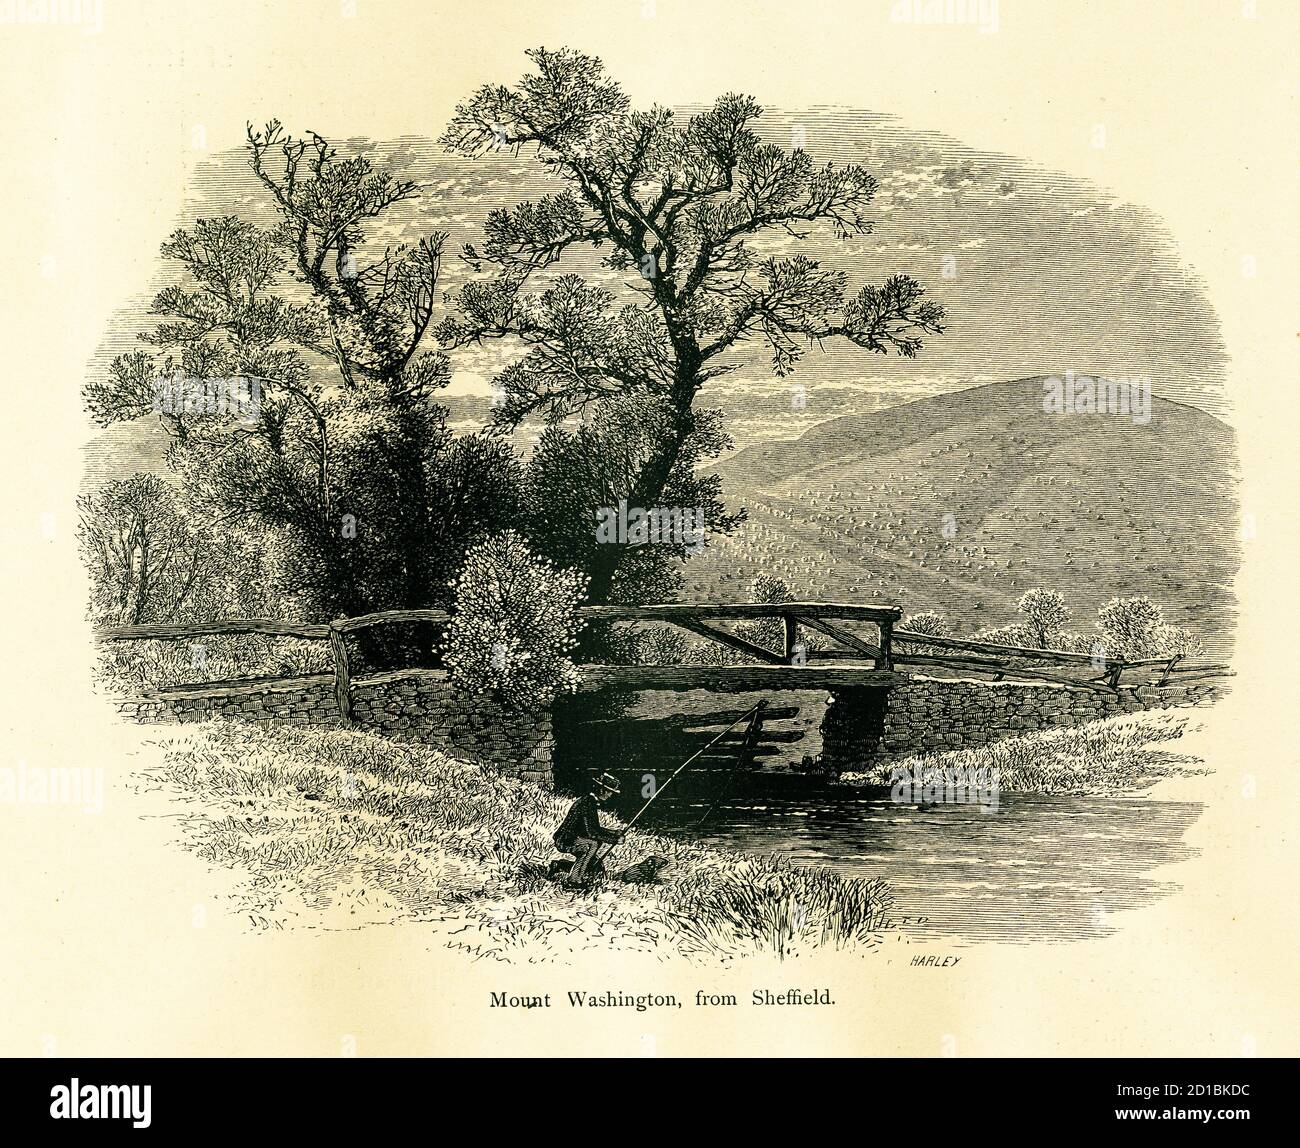 Illustration des Mount Washington aus dem 19. Jahrhundert, einem Gipfel in den Taconic Mountains, aus der Sicht von Sheffield, Massachusetts, USA. Gravur veröffentlicht in P Stockfoto